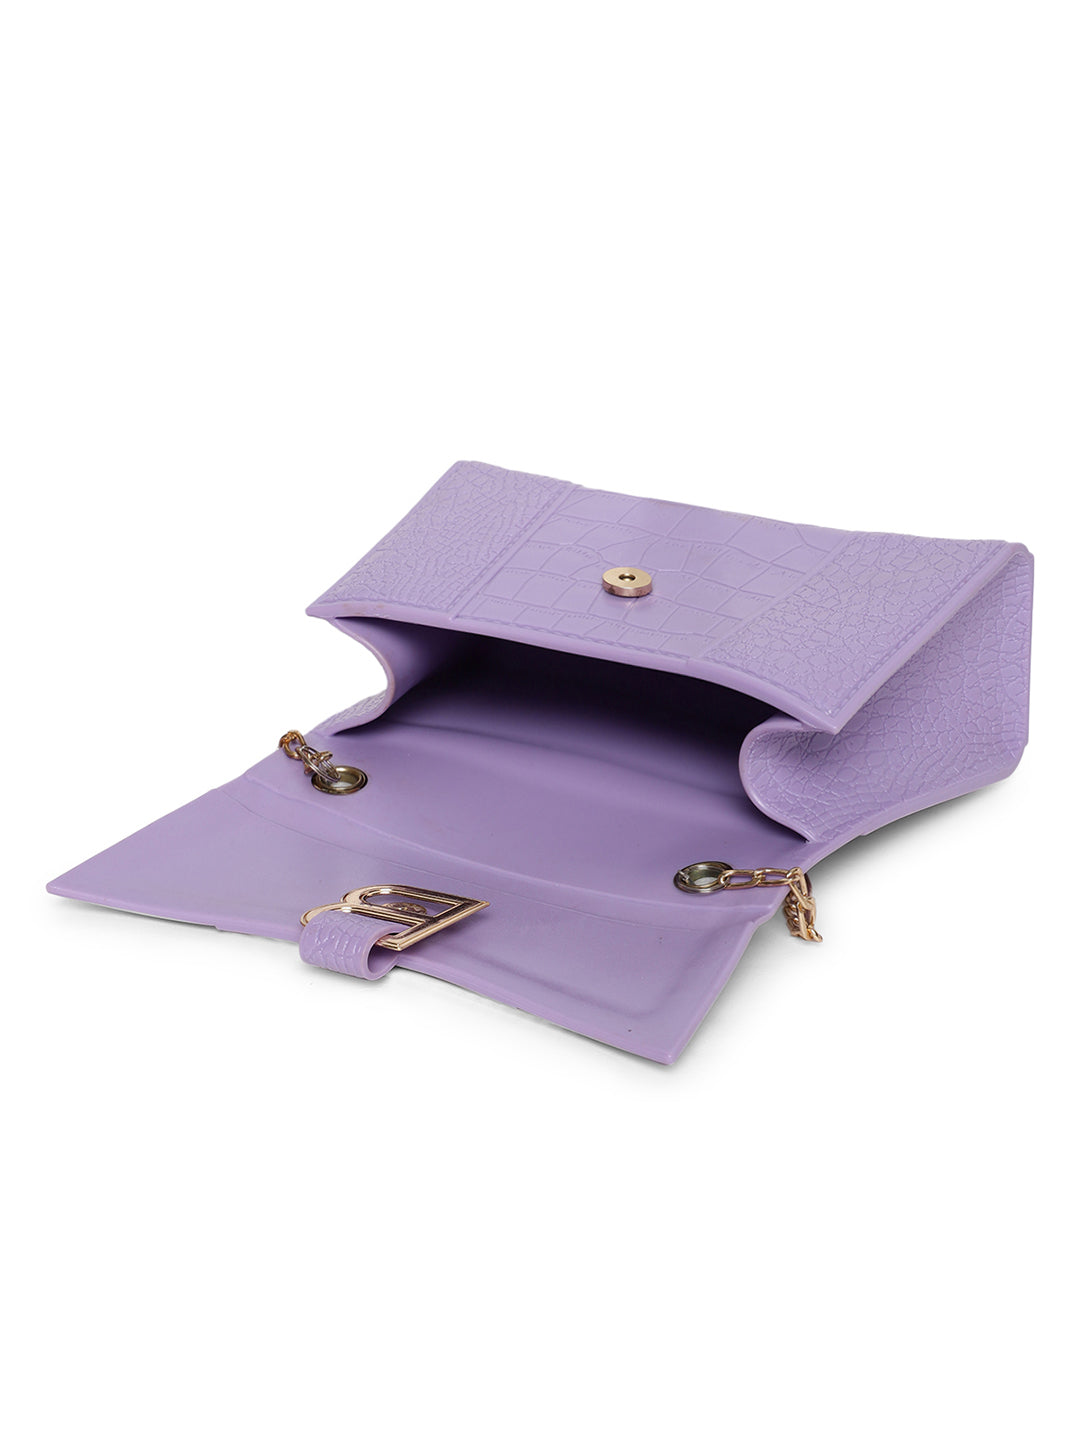 Athena Lavender Textured Envelope Clutch - Athena Lifestyle